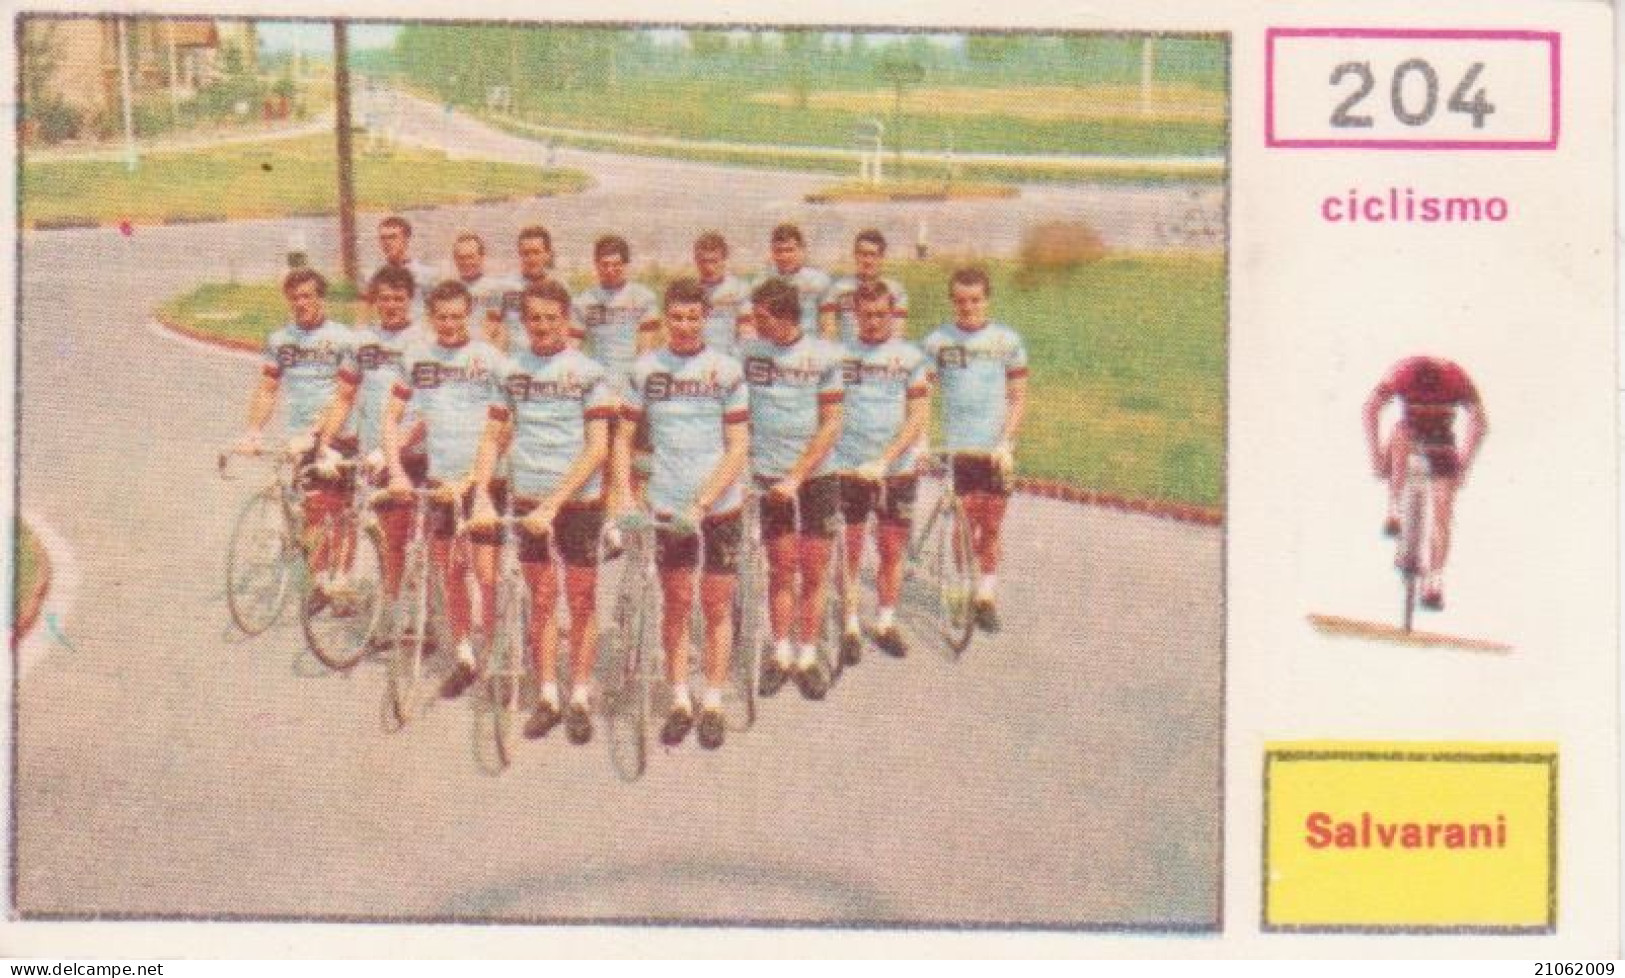 204 CICLISMO SQUADRA SALVARANI CYCLING TEAM - CAMPIONI DELLO SPORT 1967-68 PANINI STICKERS FIGURINE - Cyclisme